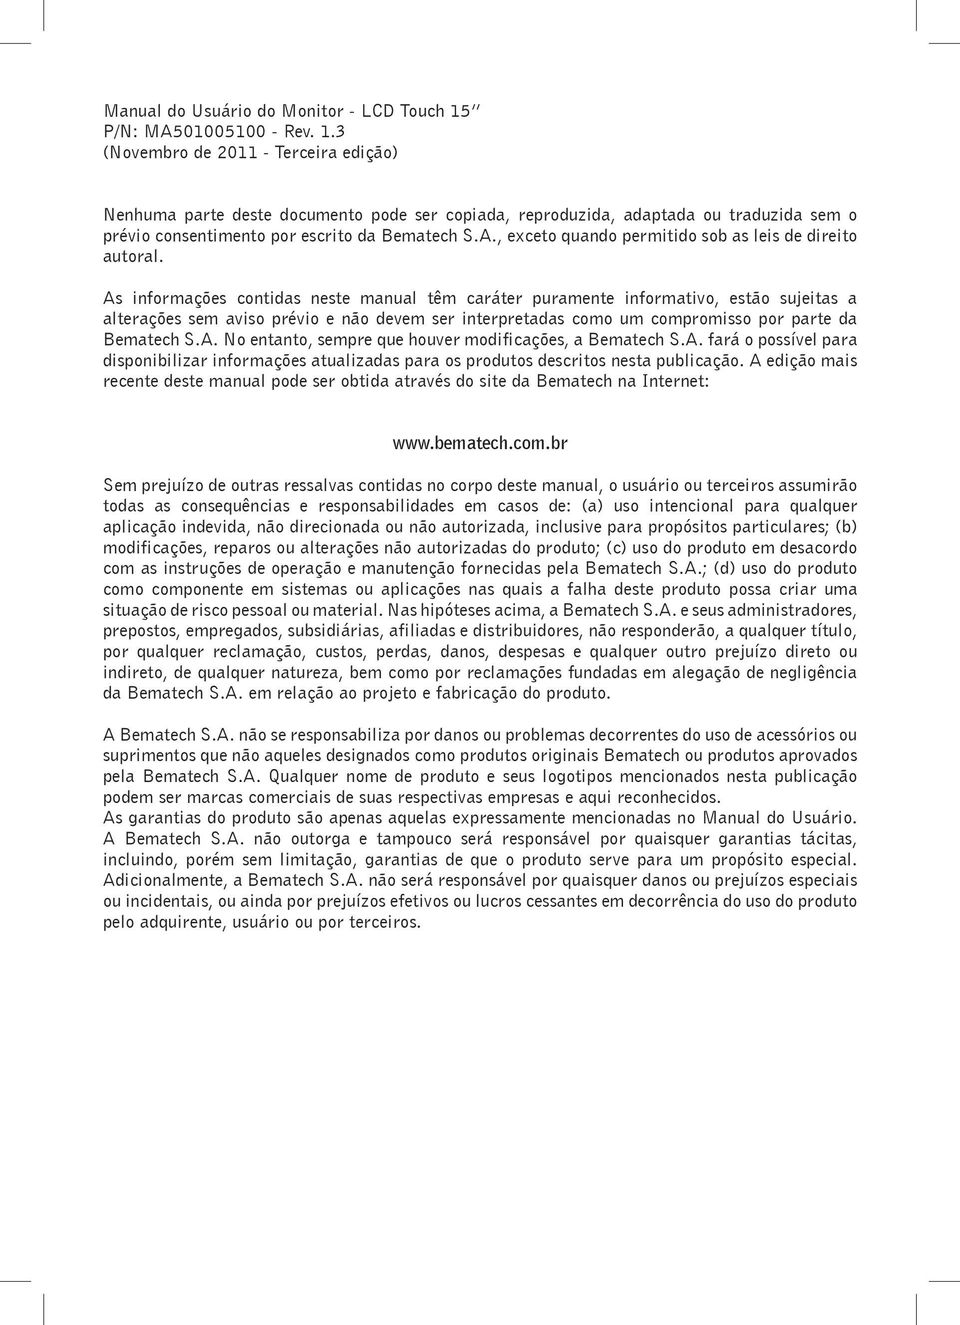 3 (Novembro de 2011 - Terceira edição) Nenhuma parte deste documento pode ser copiada, reproduzida, adaptada ou traduzida sem o prévio consentimento por escrito da Bematech S.A.